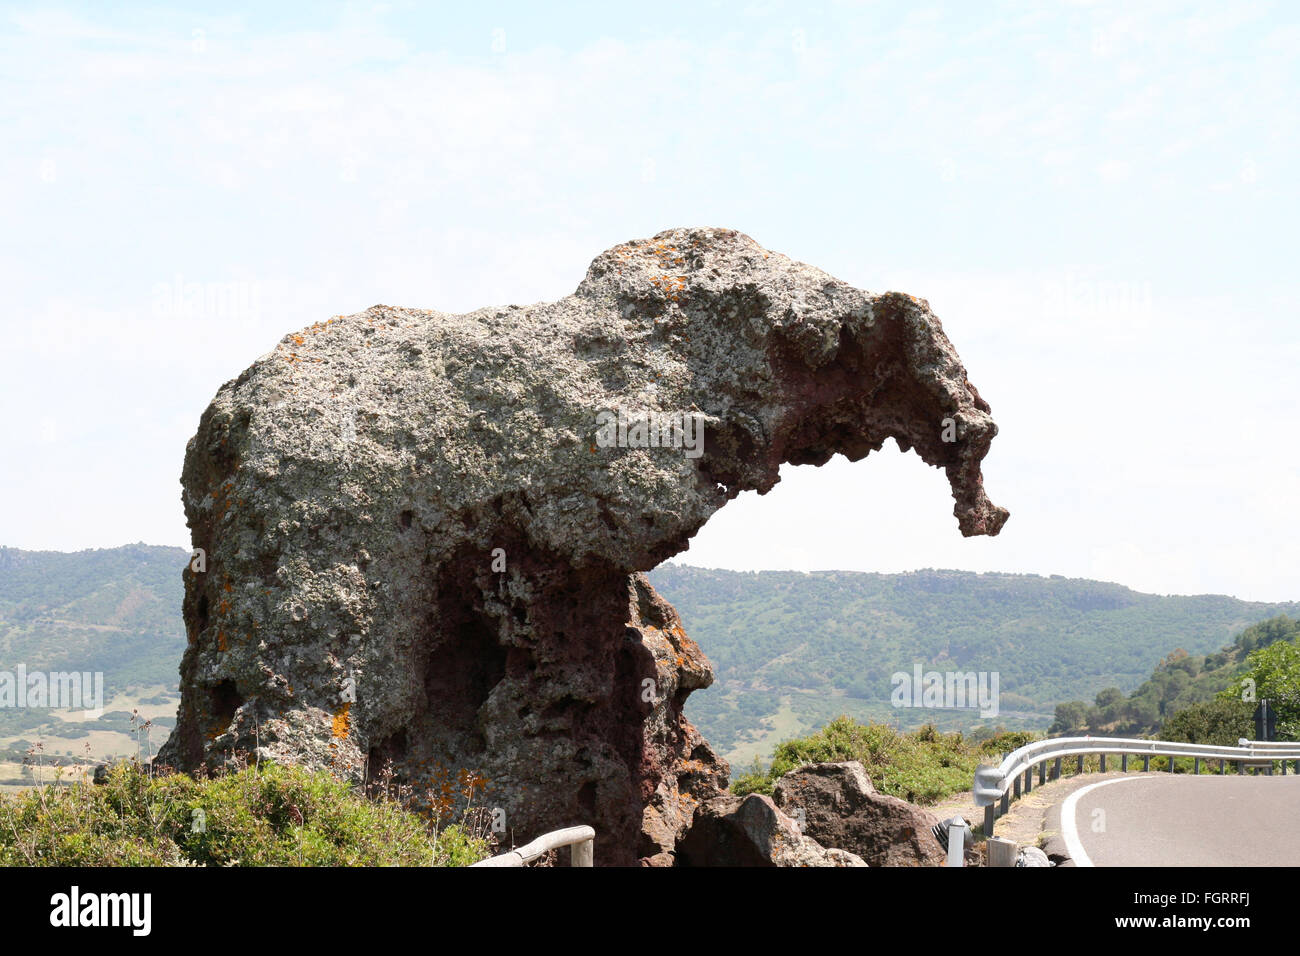 Elephant Rock. Eine ungewöhnliche Felsformation in Nord-Sardinien, Italien, von einem Felsen geprägt durch Winderosion auszusehen wie ein Elefant. Stockfoto